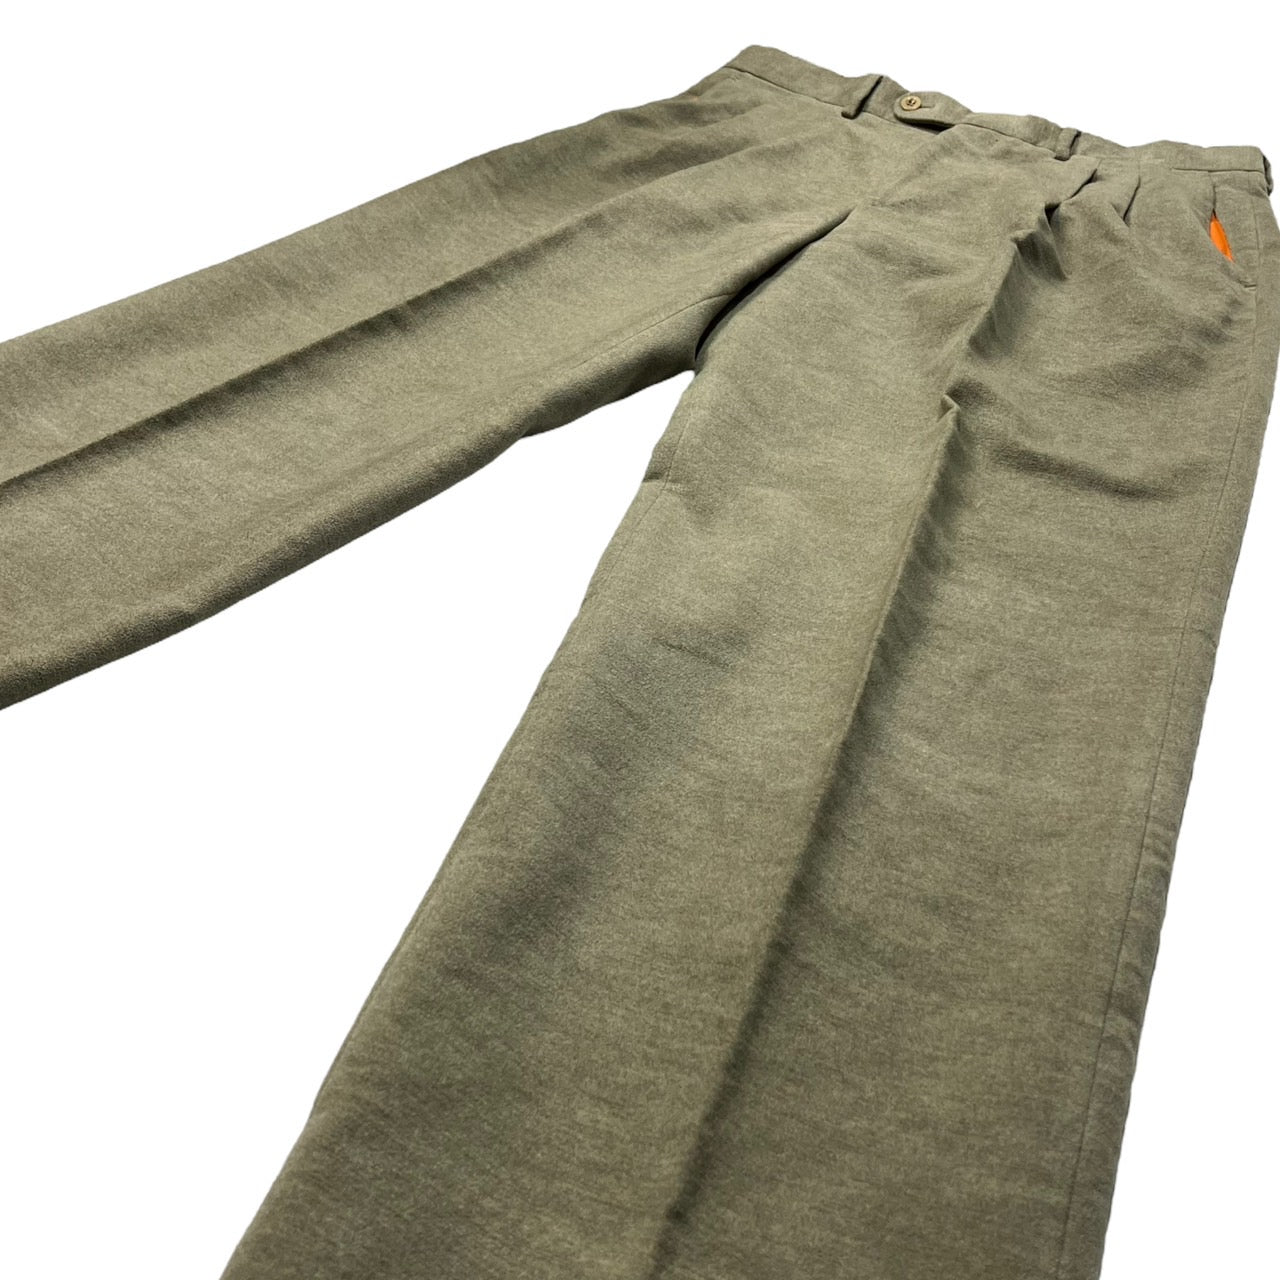 HERMES(エルメス) suede touch trousers/スウェードタッチトラウザー/パンツ/スラックス 52(XLサイズ程度)